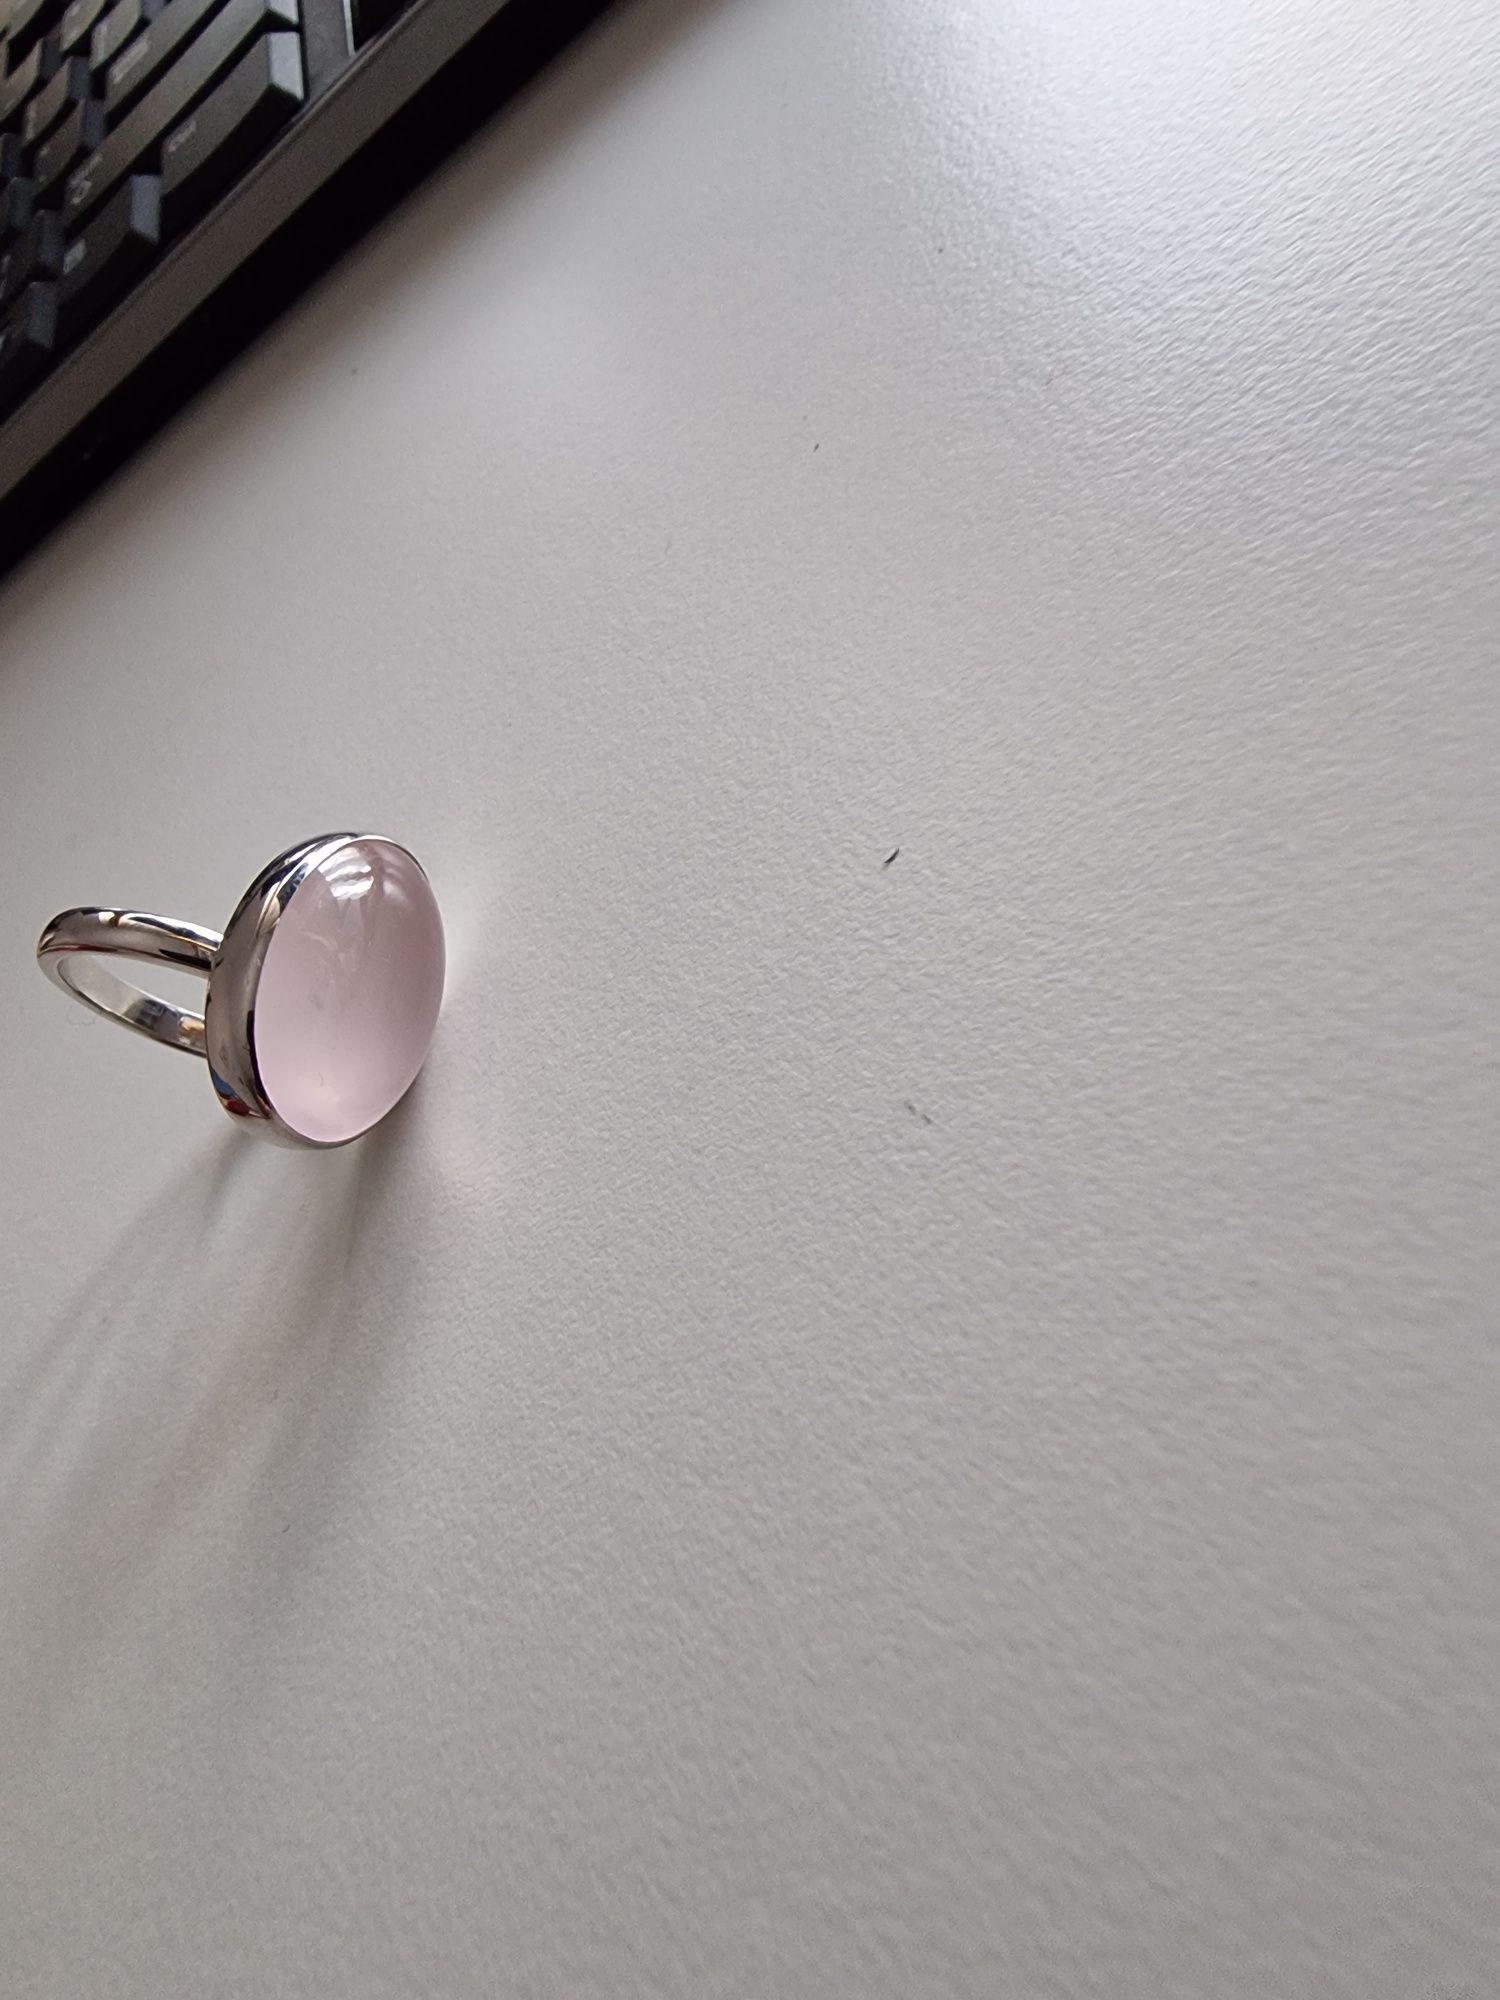 Vand inel din argint, model deosebit, cu piatra mare cuarț.